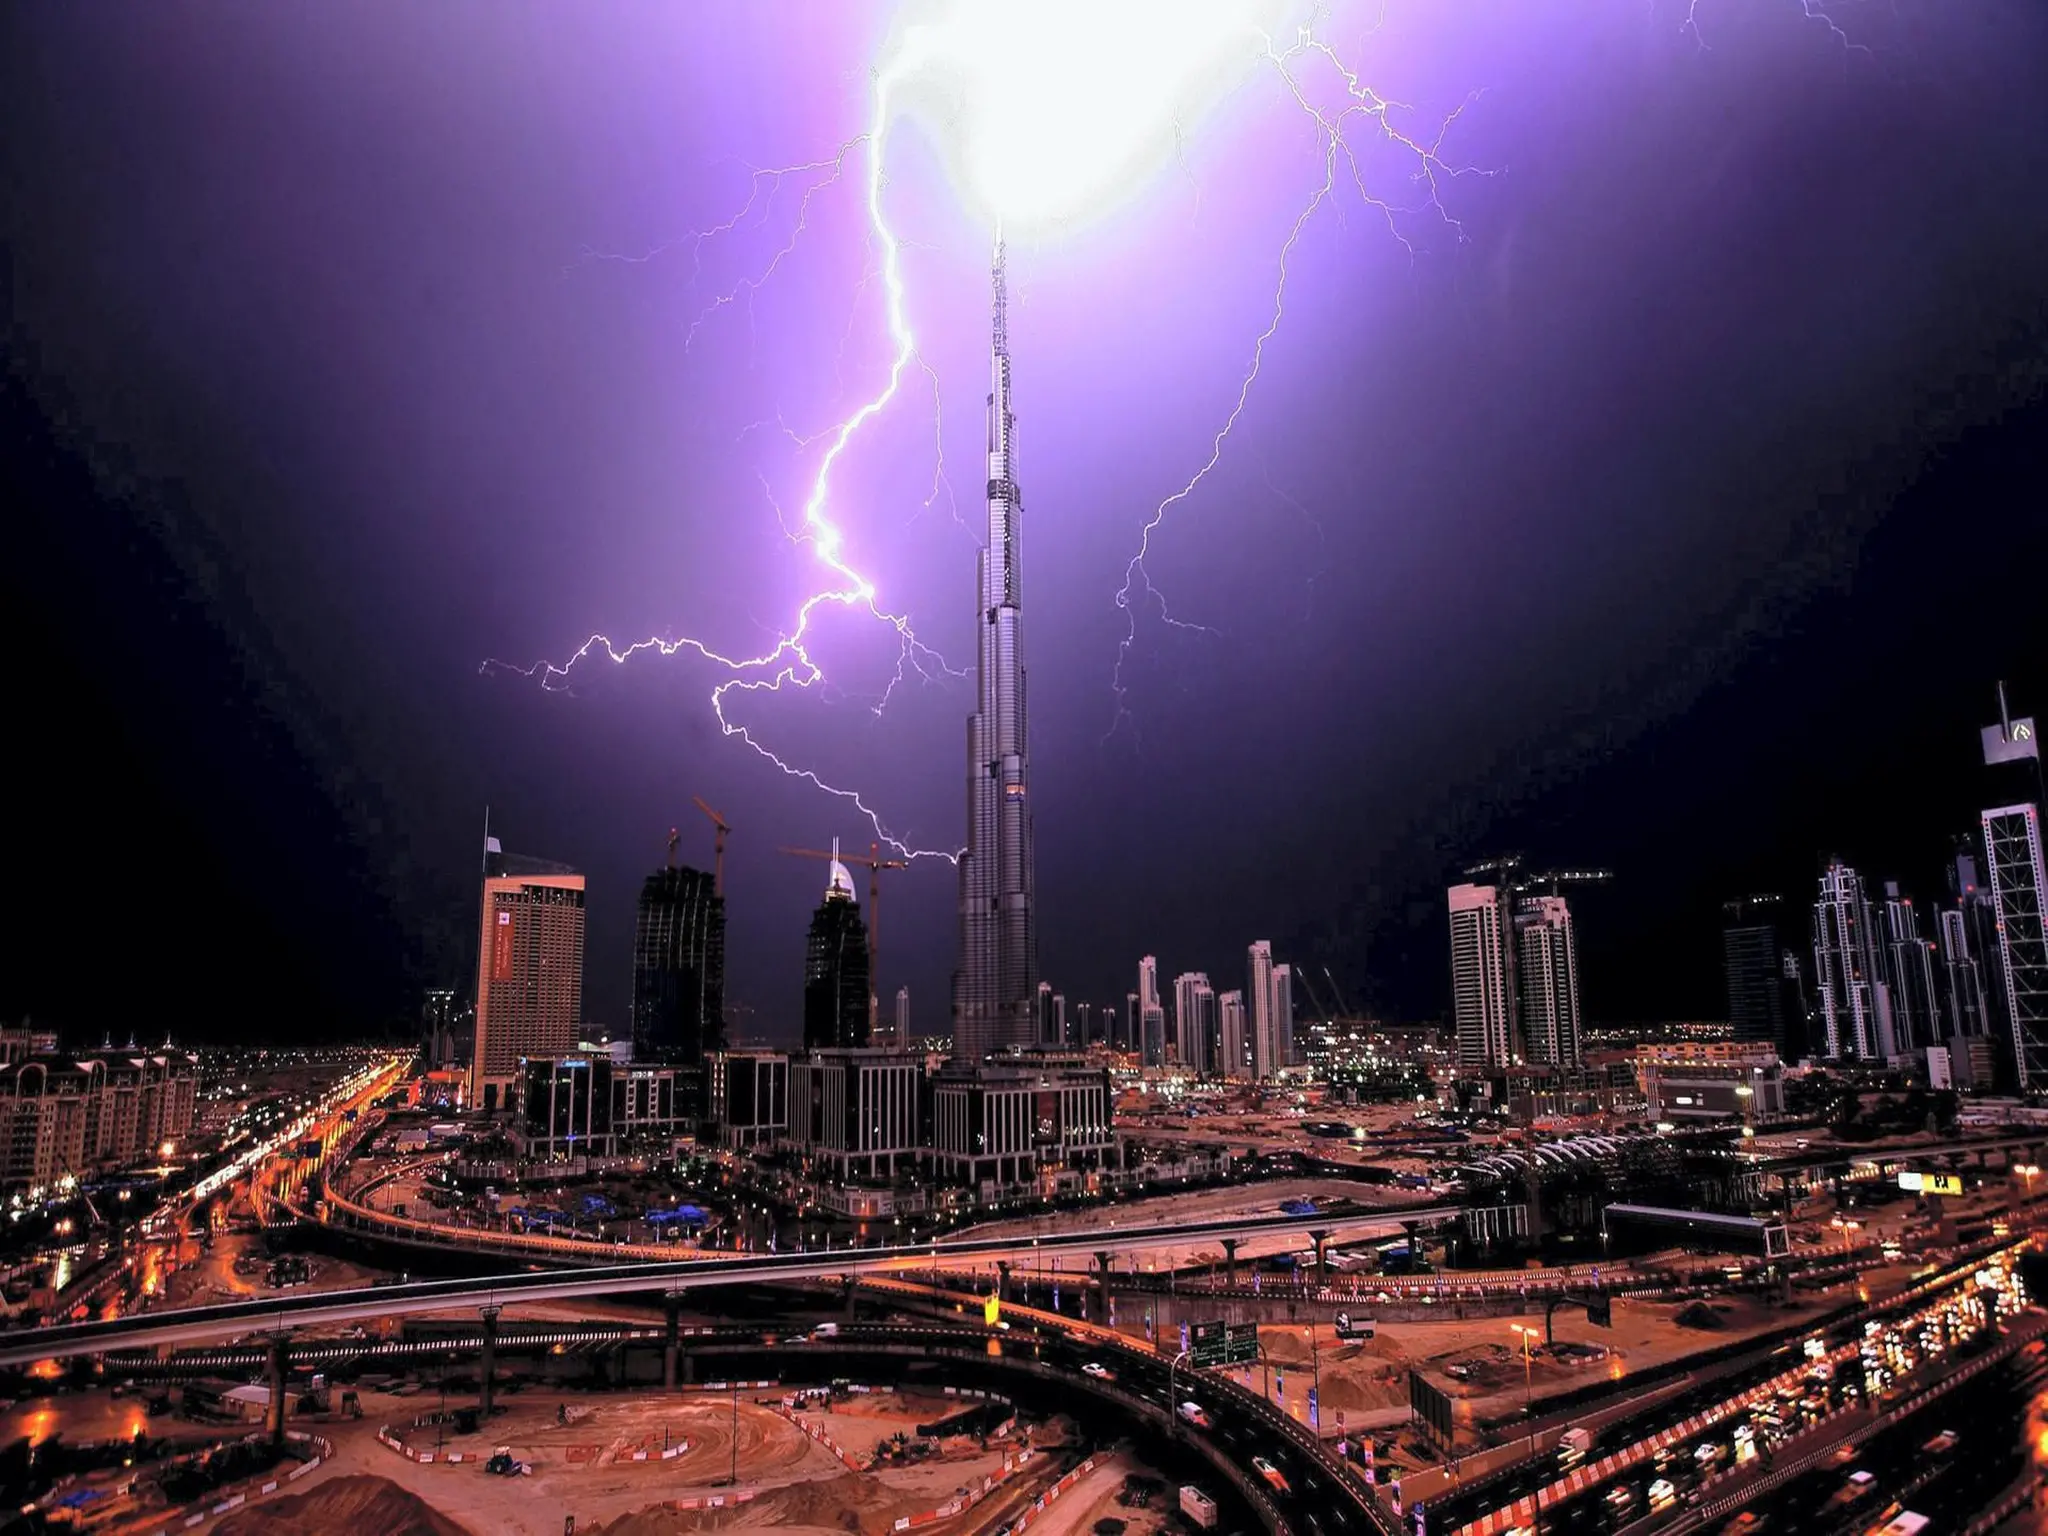 هطول أمطار غزيرة في مناطق كثيرة في الإمارات بسبب المنخفض الجوي والسلطات تحذر السكان